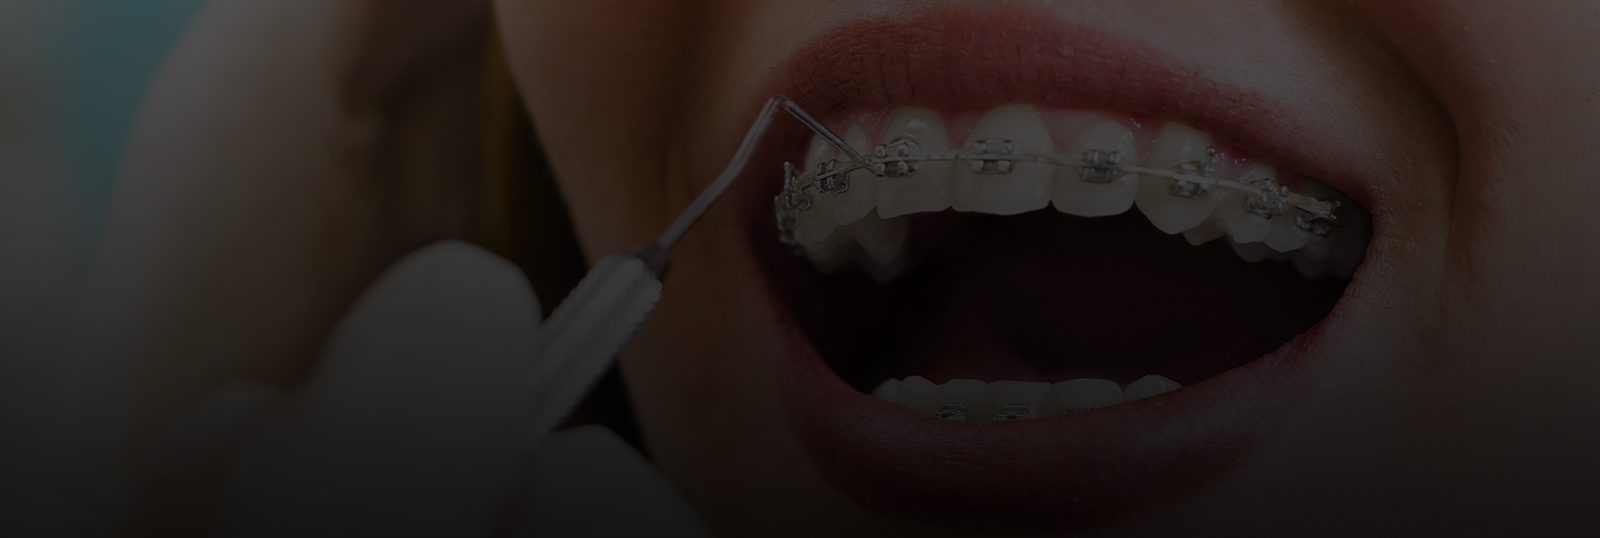 Tri-City Orthodontics - Braces